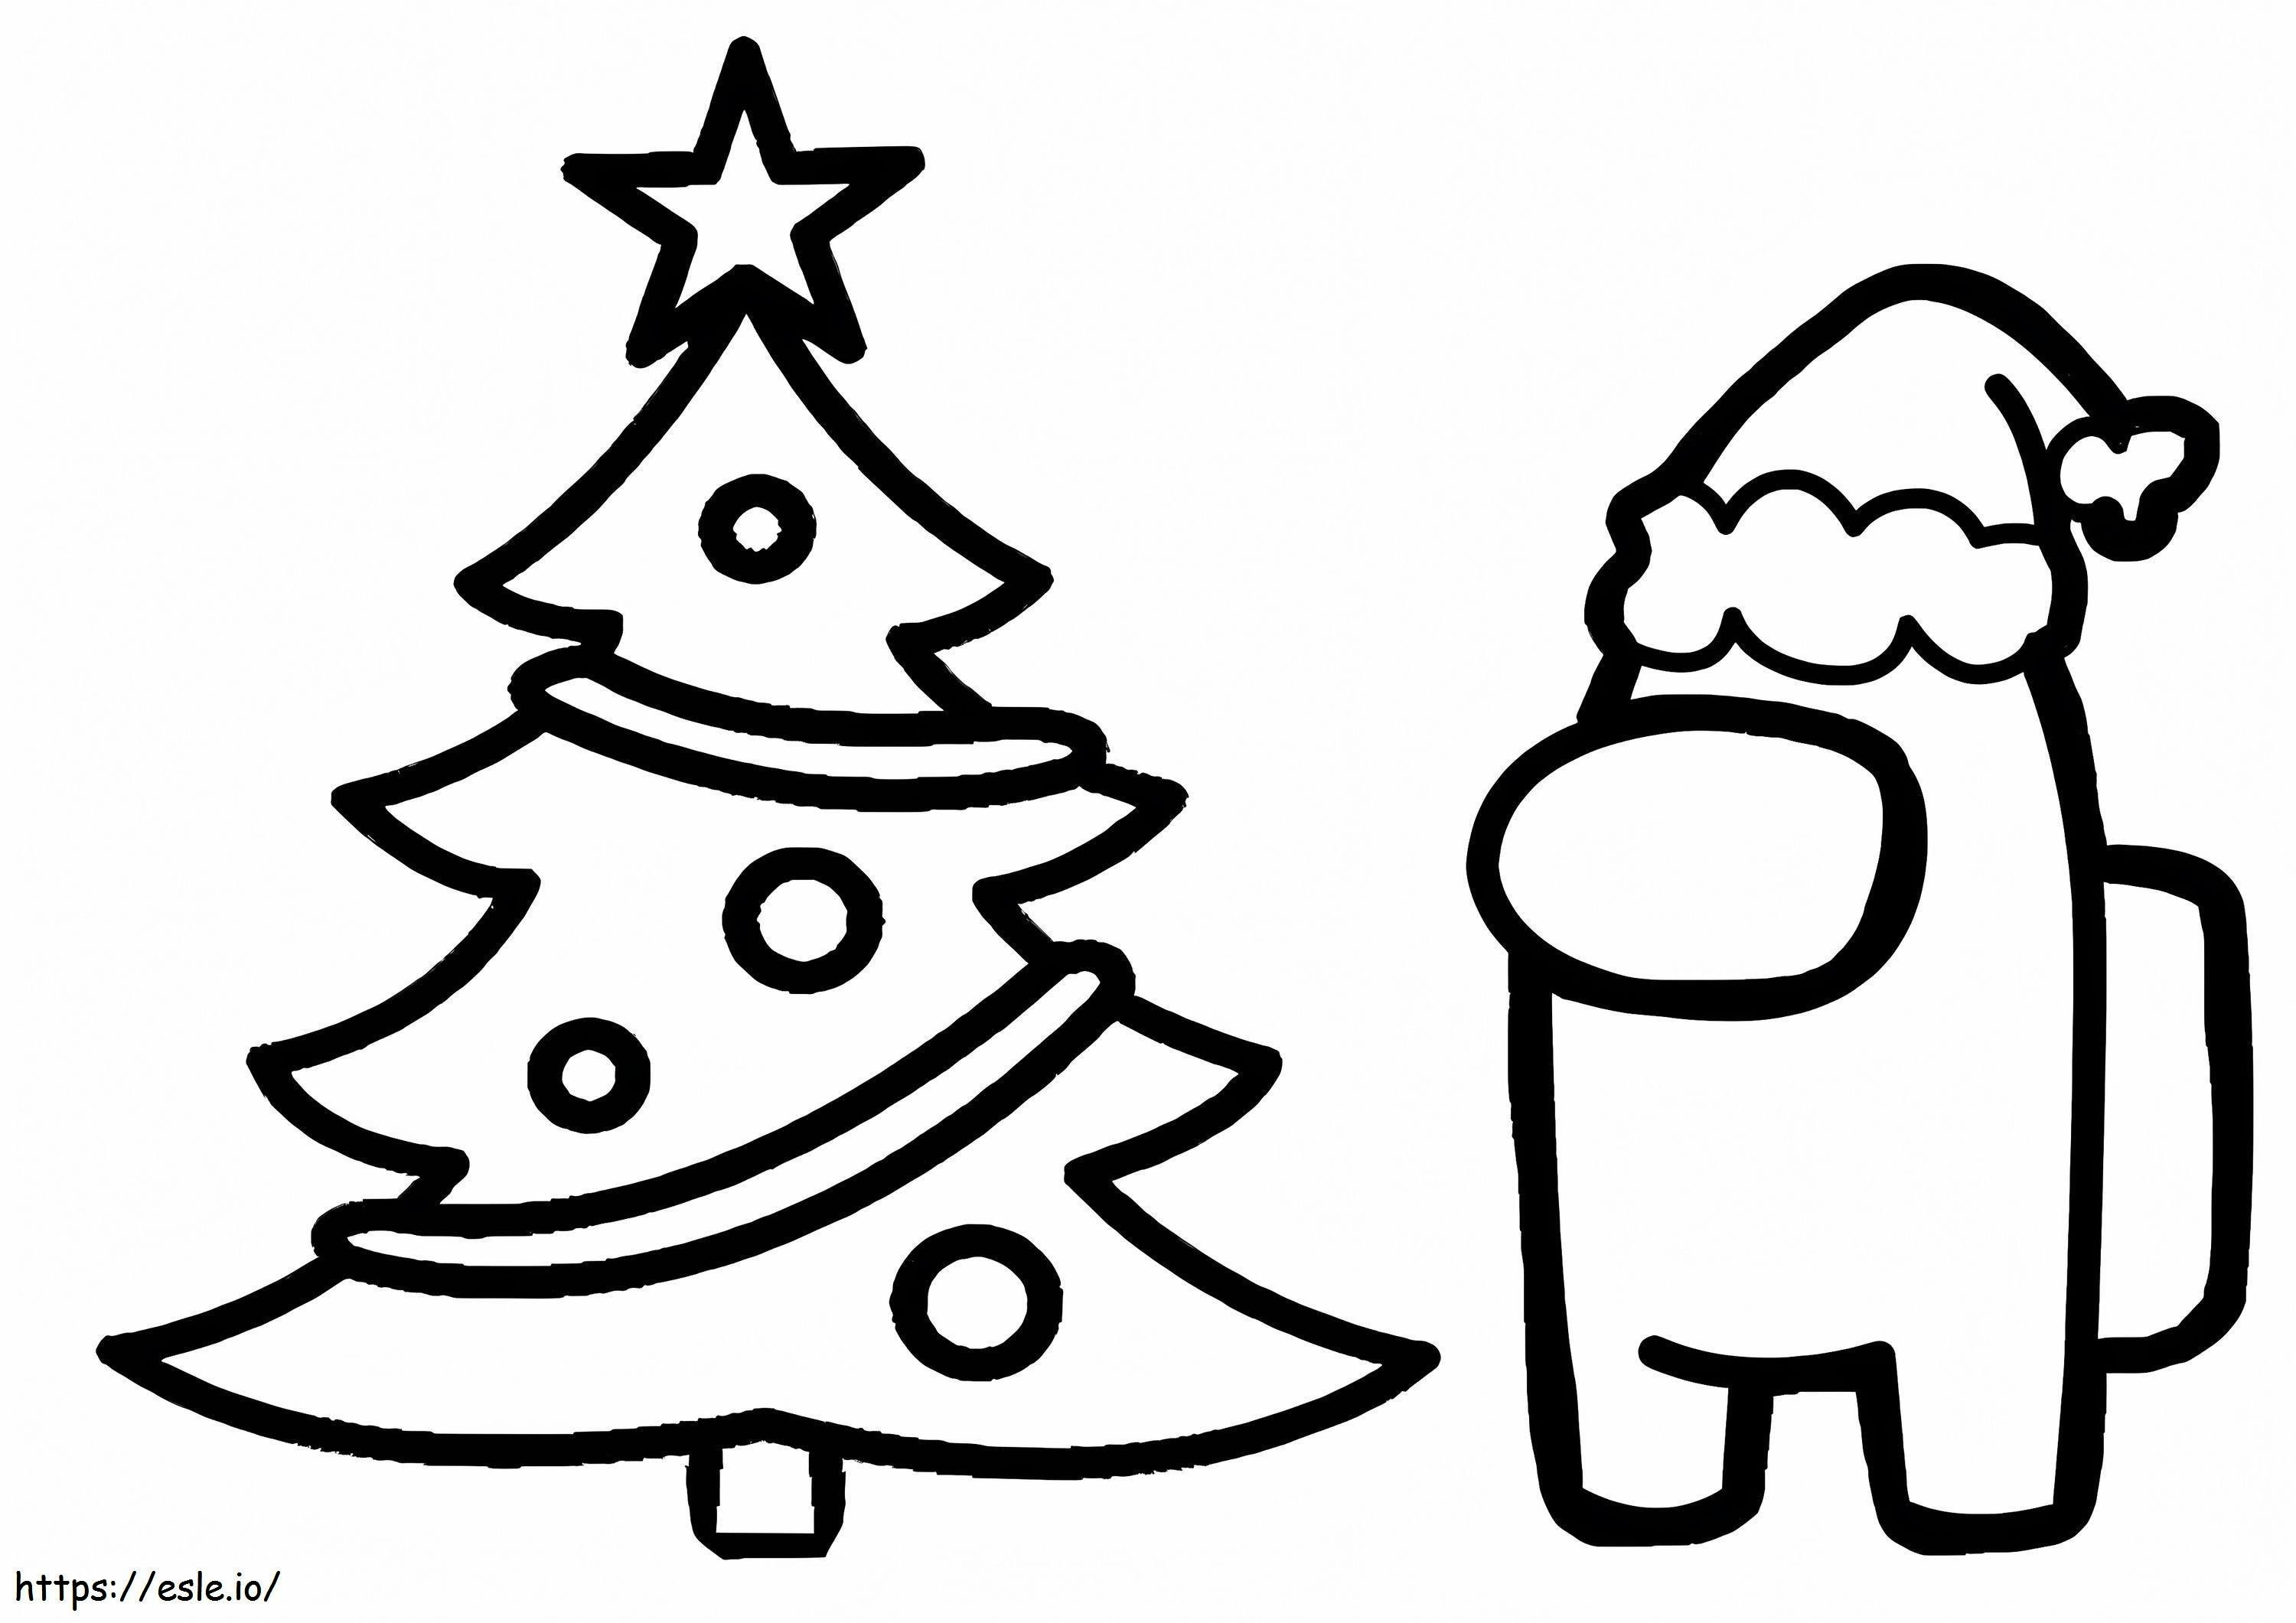 Among Us Christmas Tree coloring page